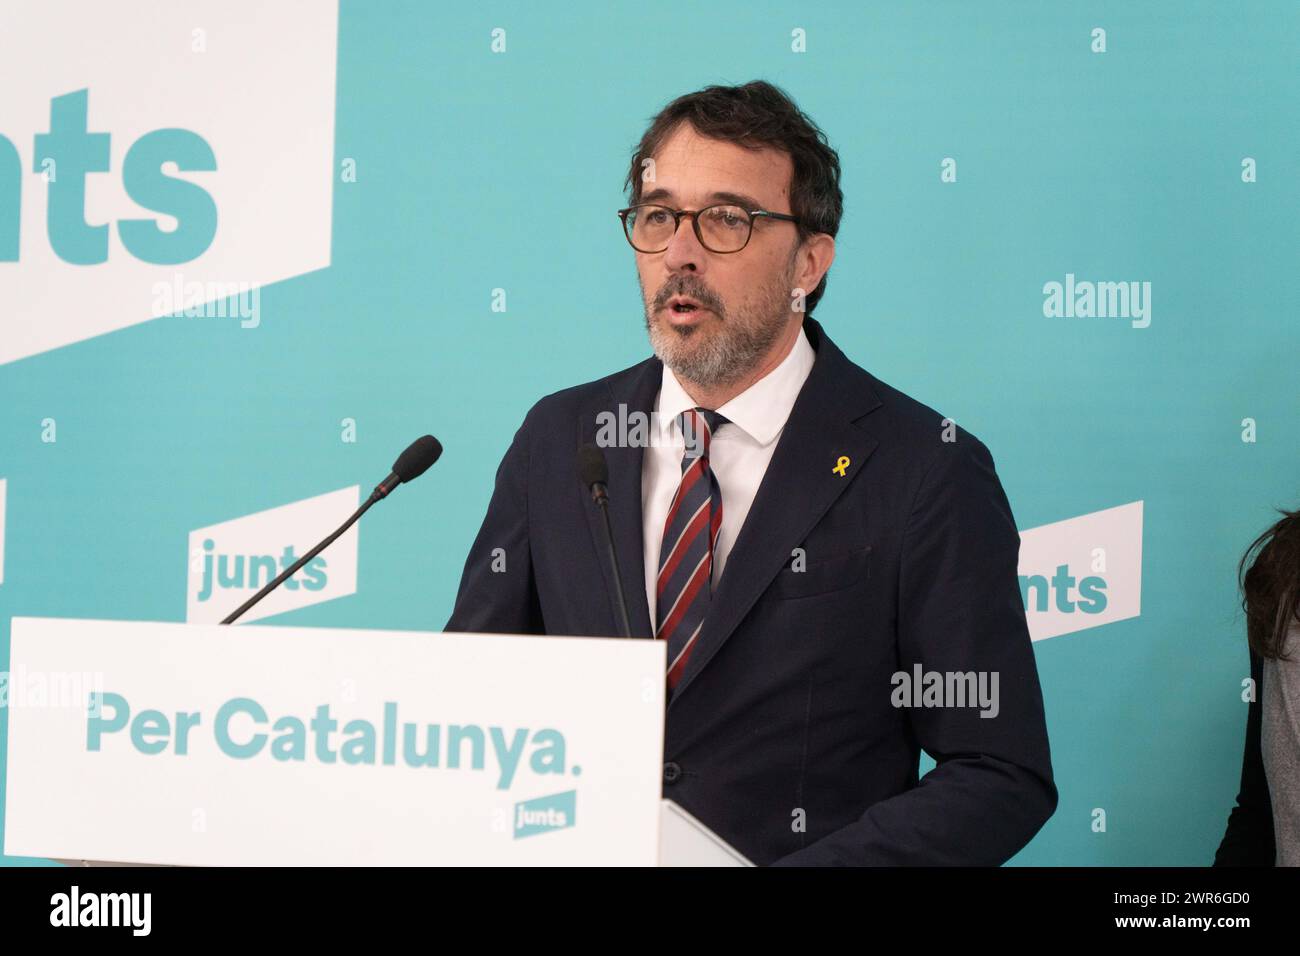 Pressekonferenz der politischen Partei "Junts", auf der sie die in der vergangenen Woche mit der spanischen Regierung erzielte Amnestievereinbarung positiv bewertet haben, obwohl sie betont haben, dass dies nicht bedeutet, dass es sich um eine Regierungsvereinbarung mit der spanischen Regierung handelt. Andererseits haben sie angekündigt, dass die "Junts" eine vollständige Änderung der Haushaltspläne der Generalitat vorgelegt haben. über die am Mittwoch im katalanischen parlament abgestimmt wird, wobei die wenigen Treffen mit der Regierung von Pere Aragones und die Ablehnung des Vorschlags zur Reduzierung von inh kritisiert werden Stockfoto